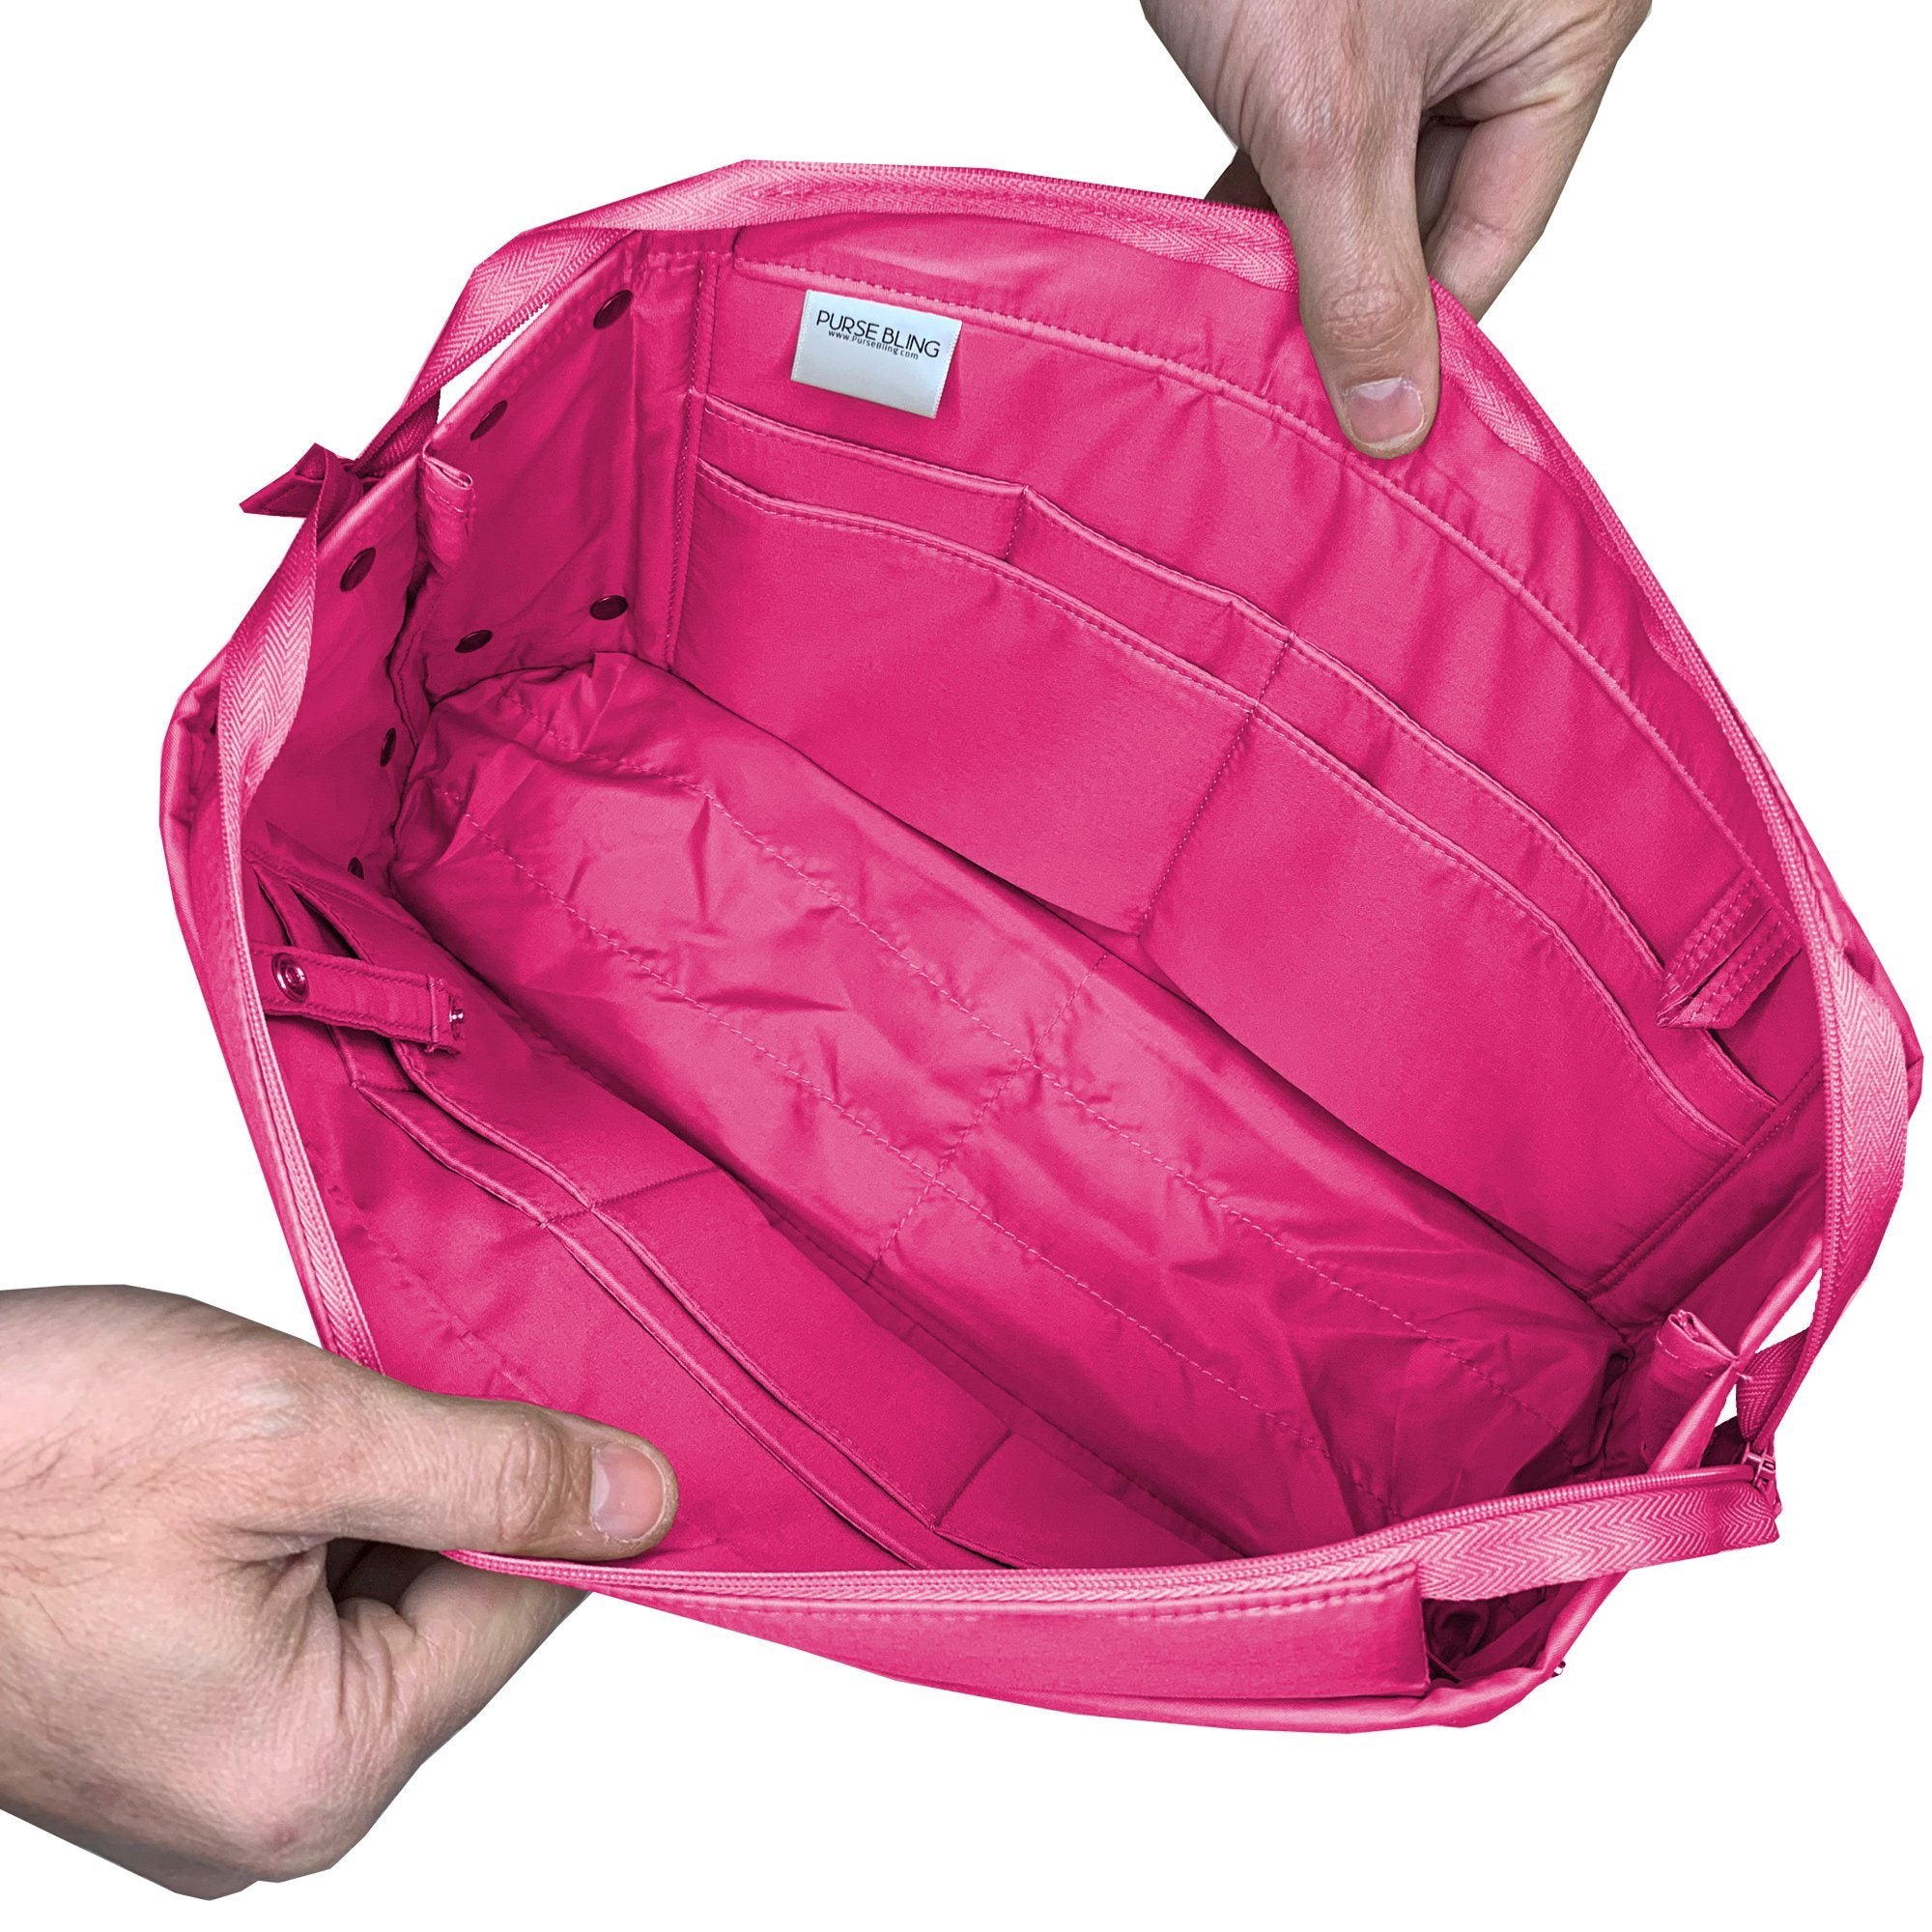 Nylon Insert Bag Organizer For Neverfull PM MM Luxury Handbag